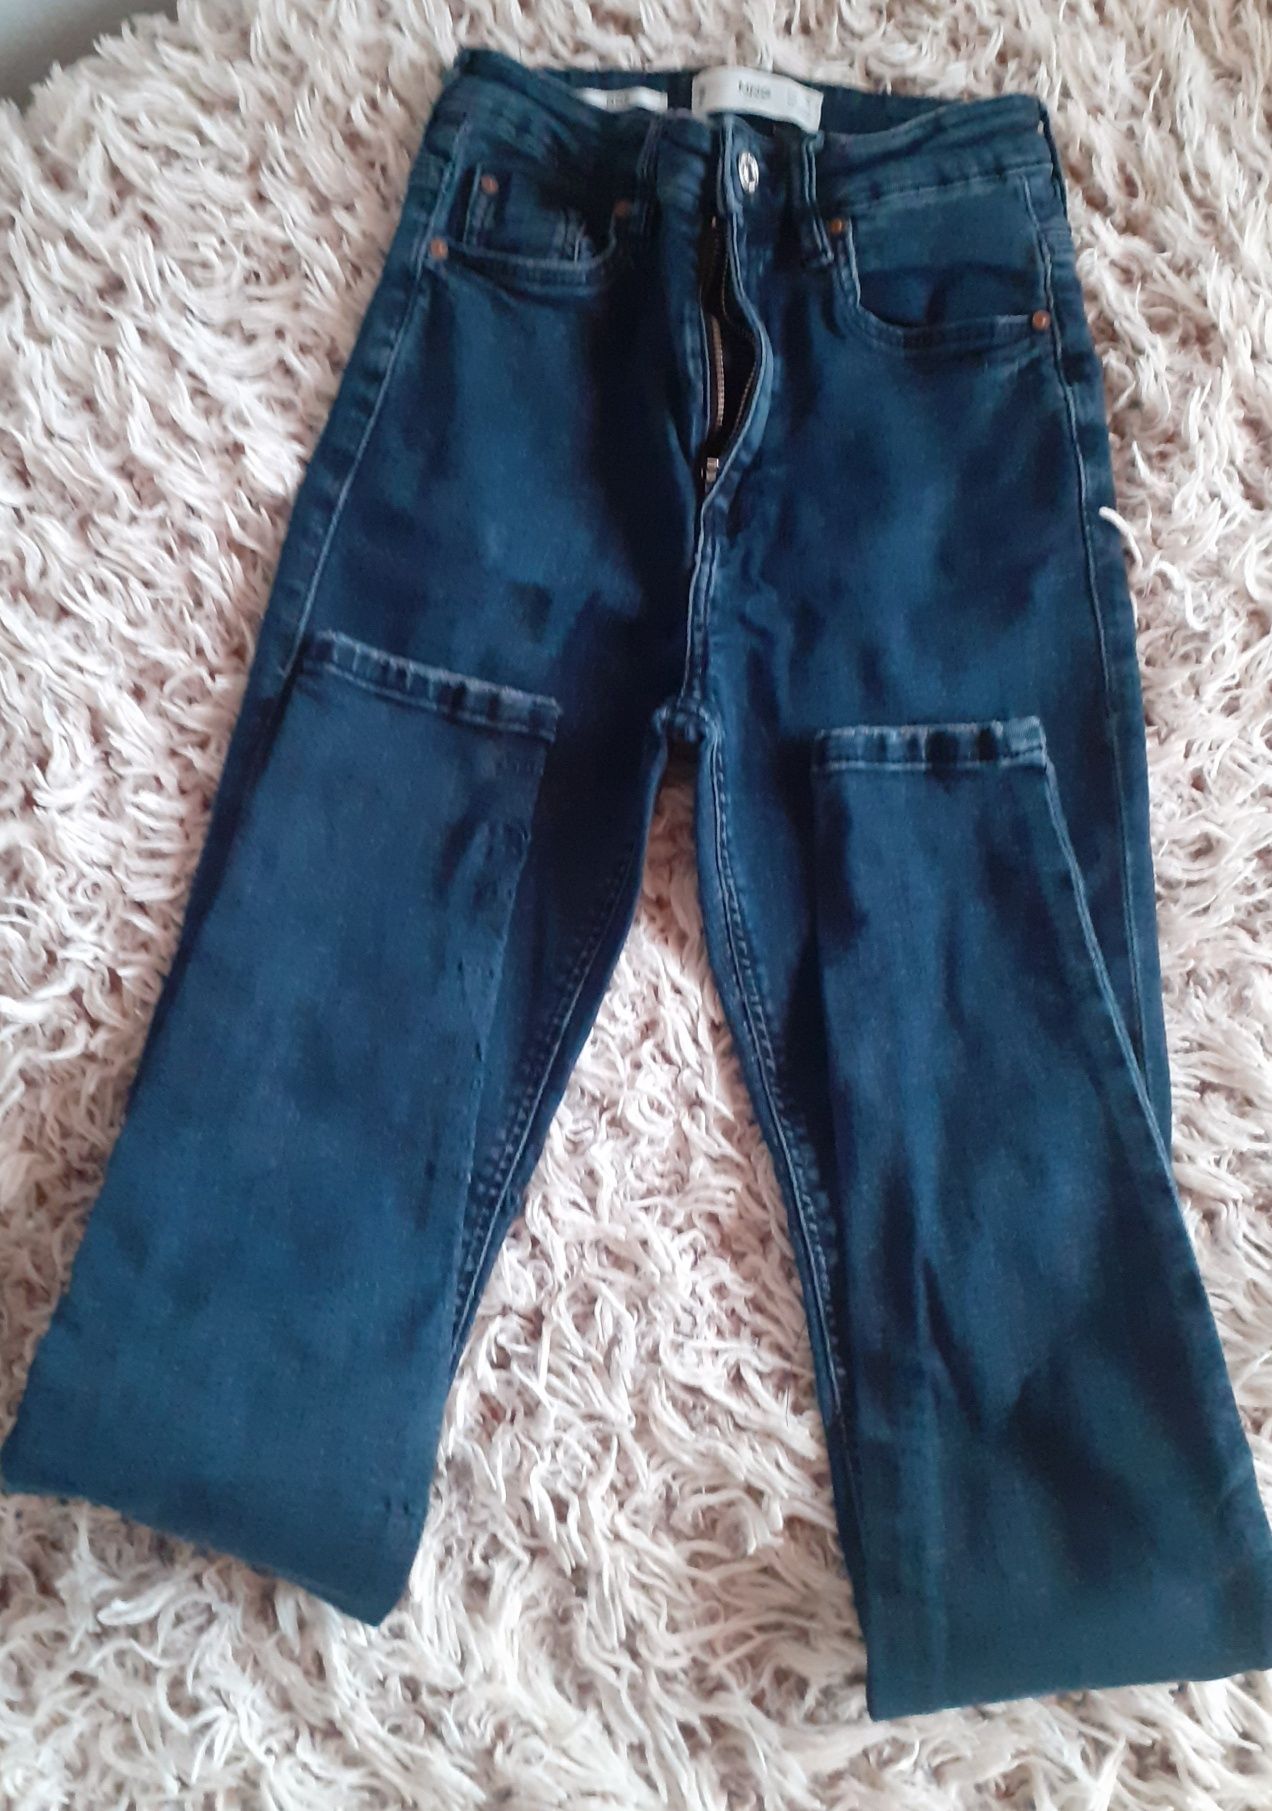 Dżinsy jeansy Mango XS granatowe ciemno niebieskie damskie